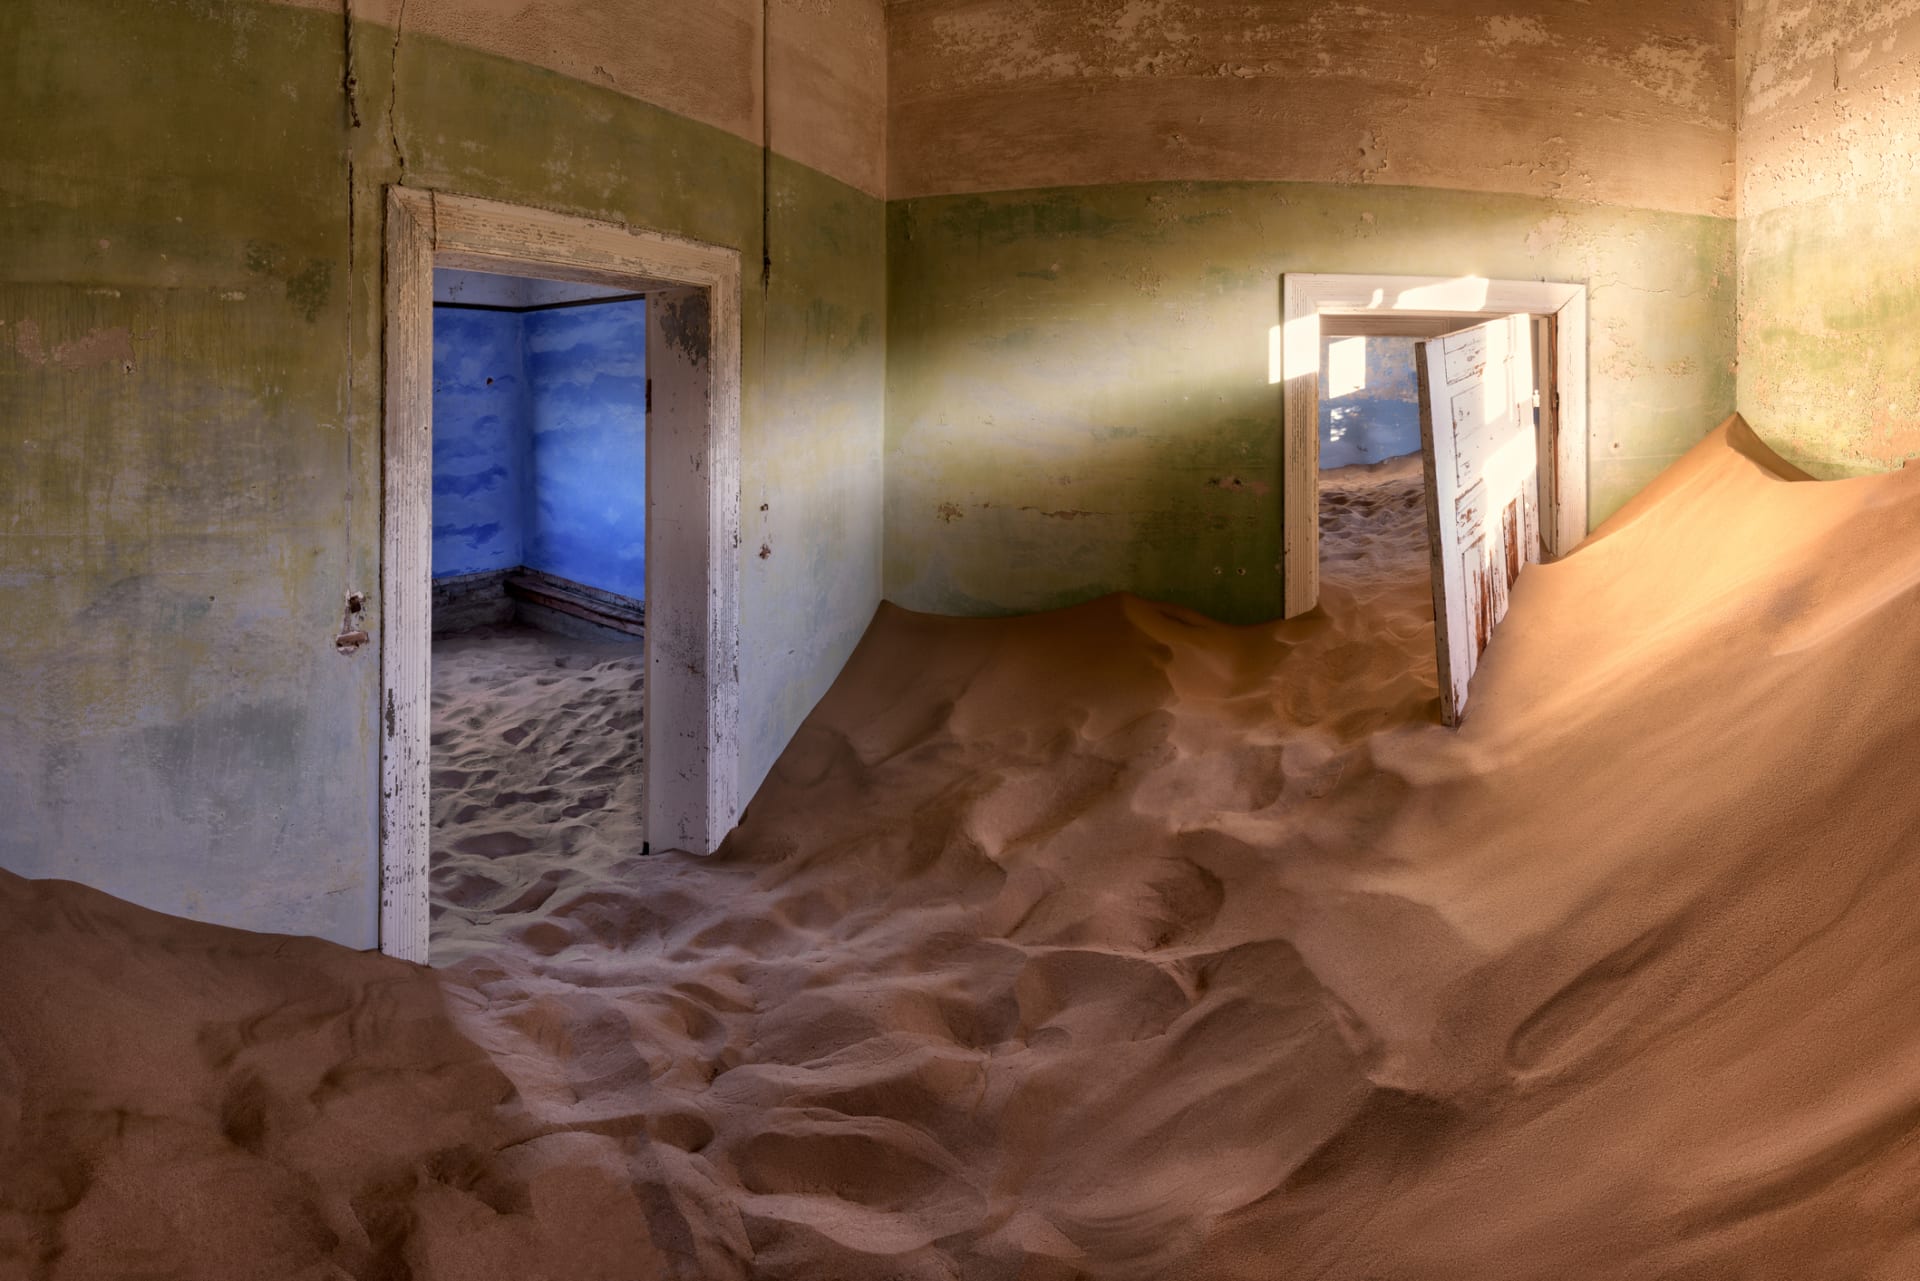 Vnitřky kdysi výstavných domů pohlcuje písek